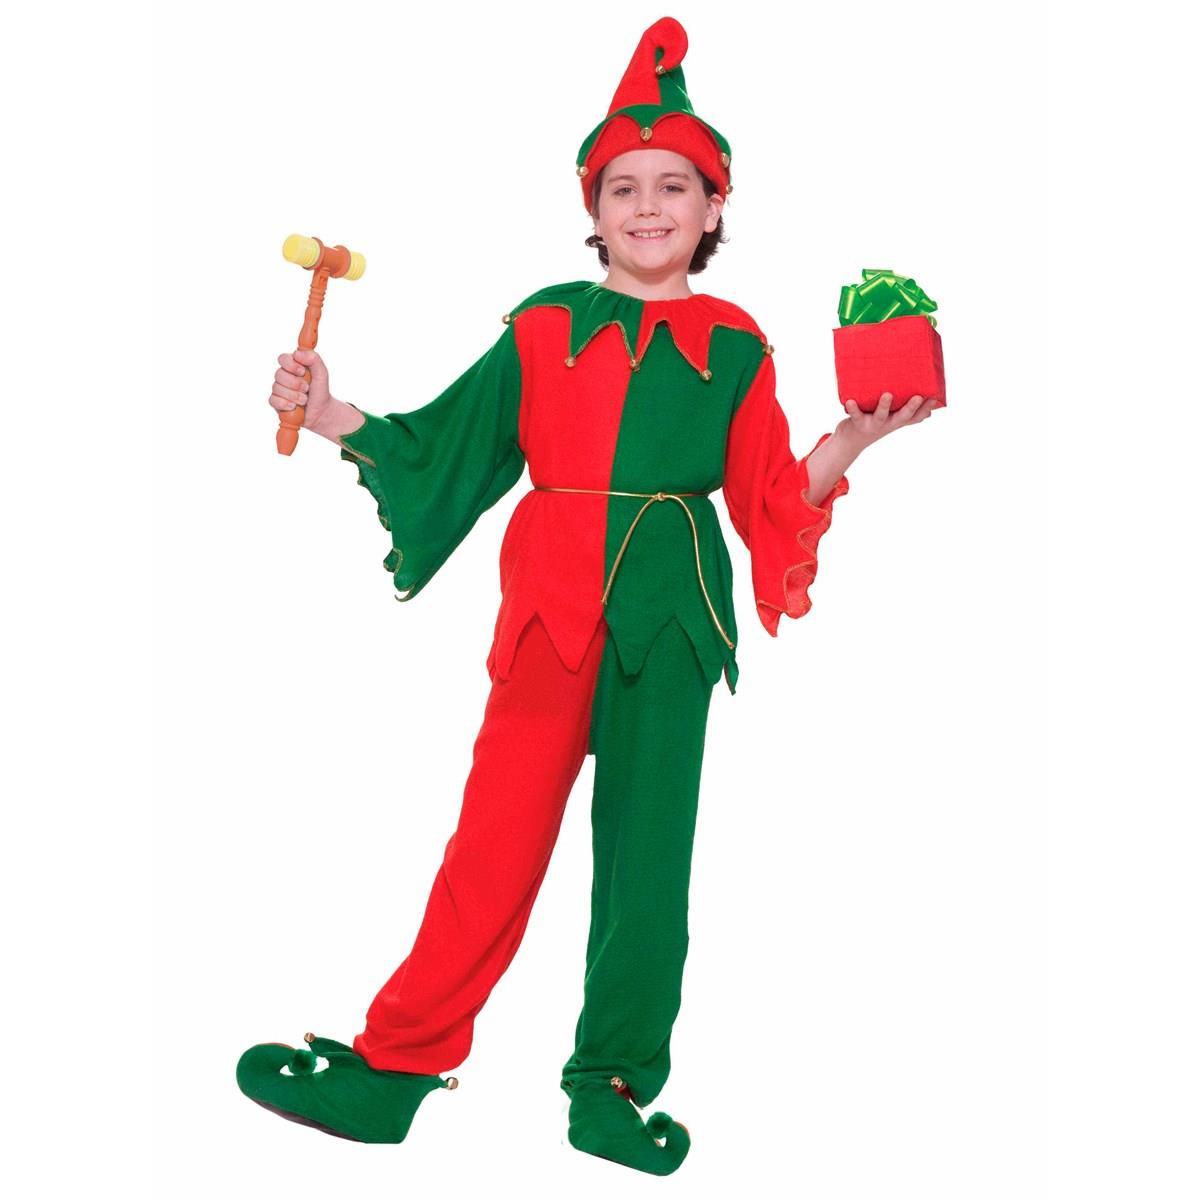 275398 Santas Elf Child Costume - Large